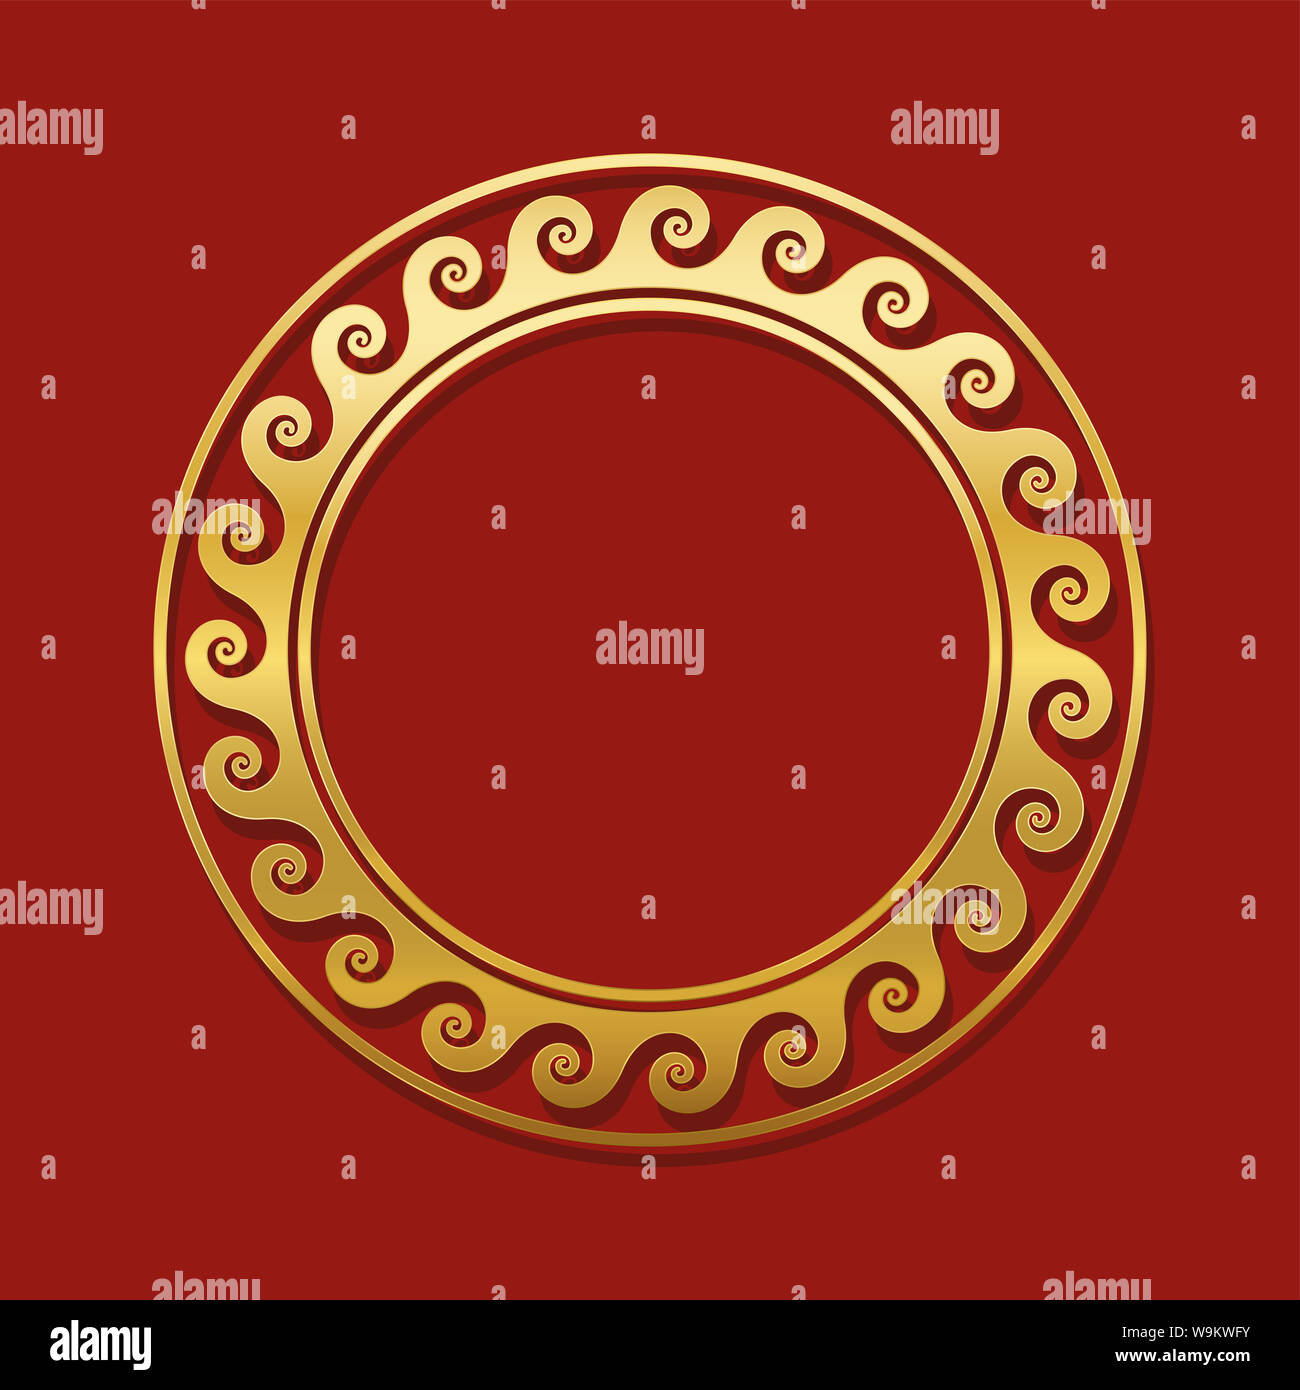 Runde goldene Rahmen mit Spiralen oder Wellen, nahtlose Griechische kreisförmigen Muster. Dekorative Grenze, wiederholte geometrischen Motiven. Roten Hintergrund. Stockfoto